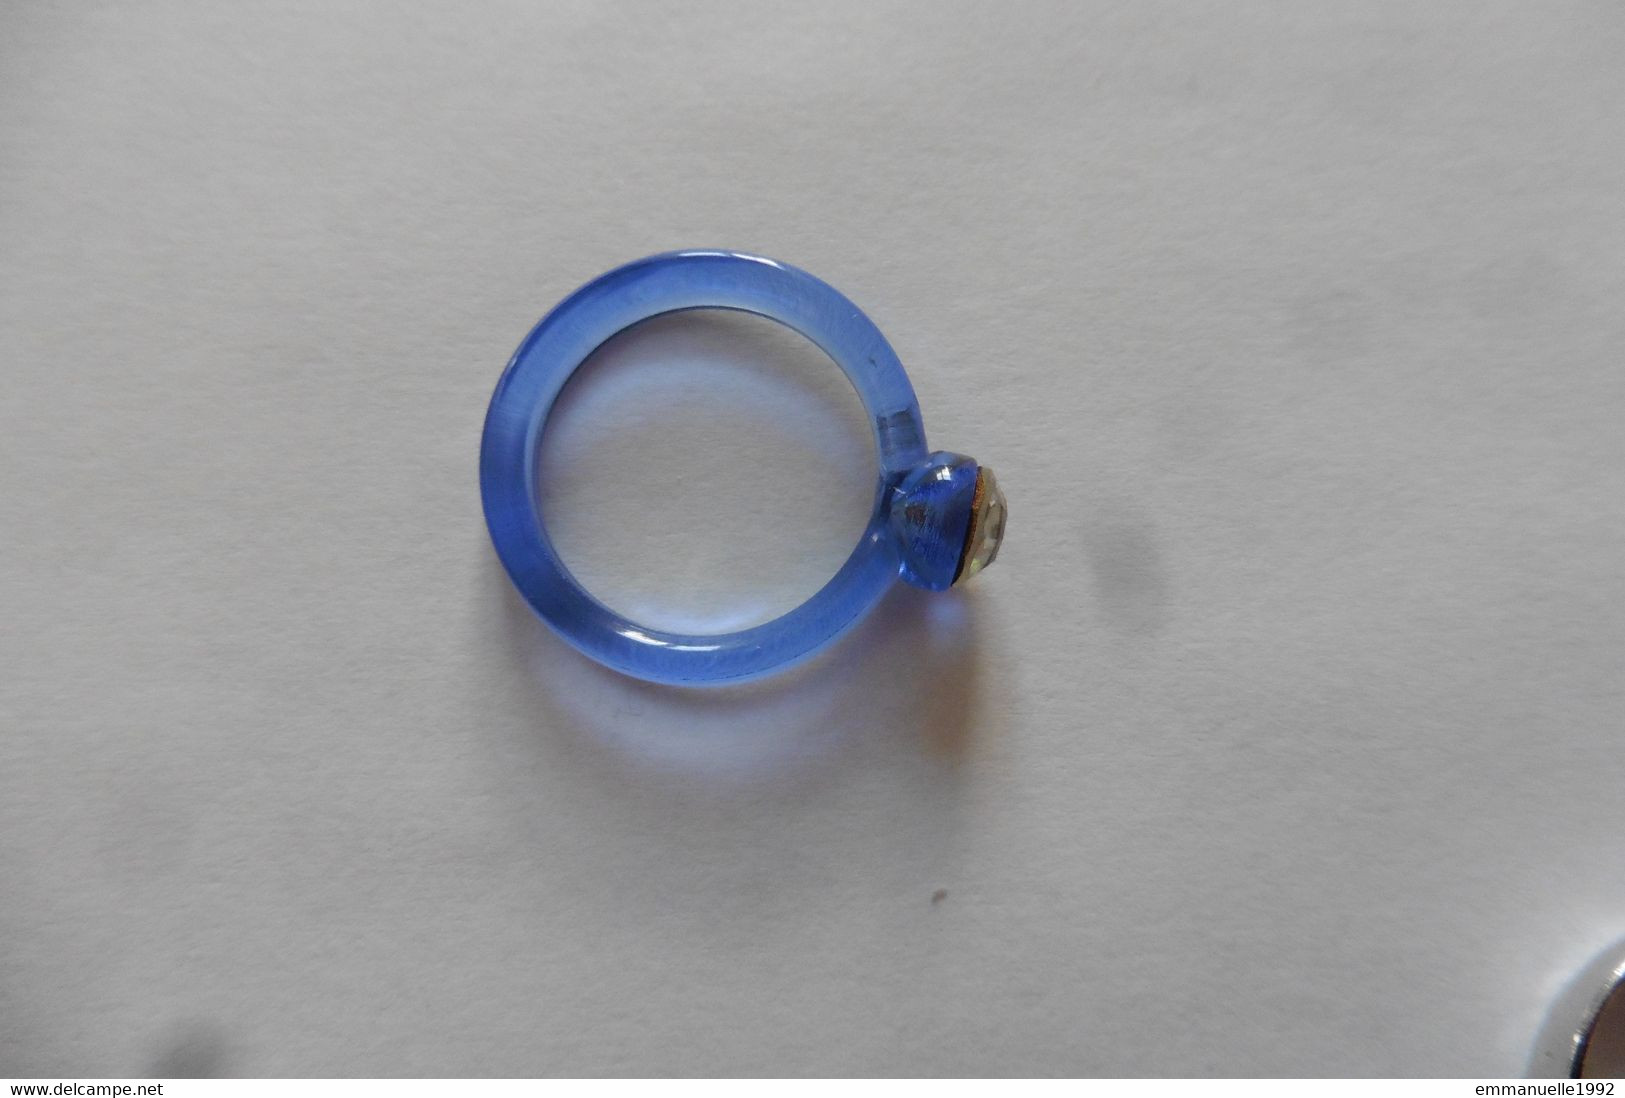 Neuf - Bague Fantaisie En Plastique Ou Résine Bleu Transparent Serti Strass Blanc Imitation Diamant T54 - Ring